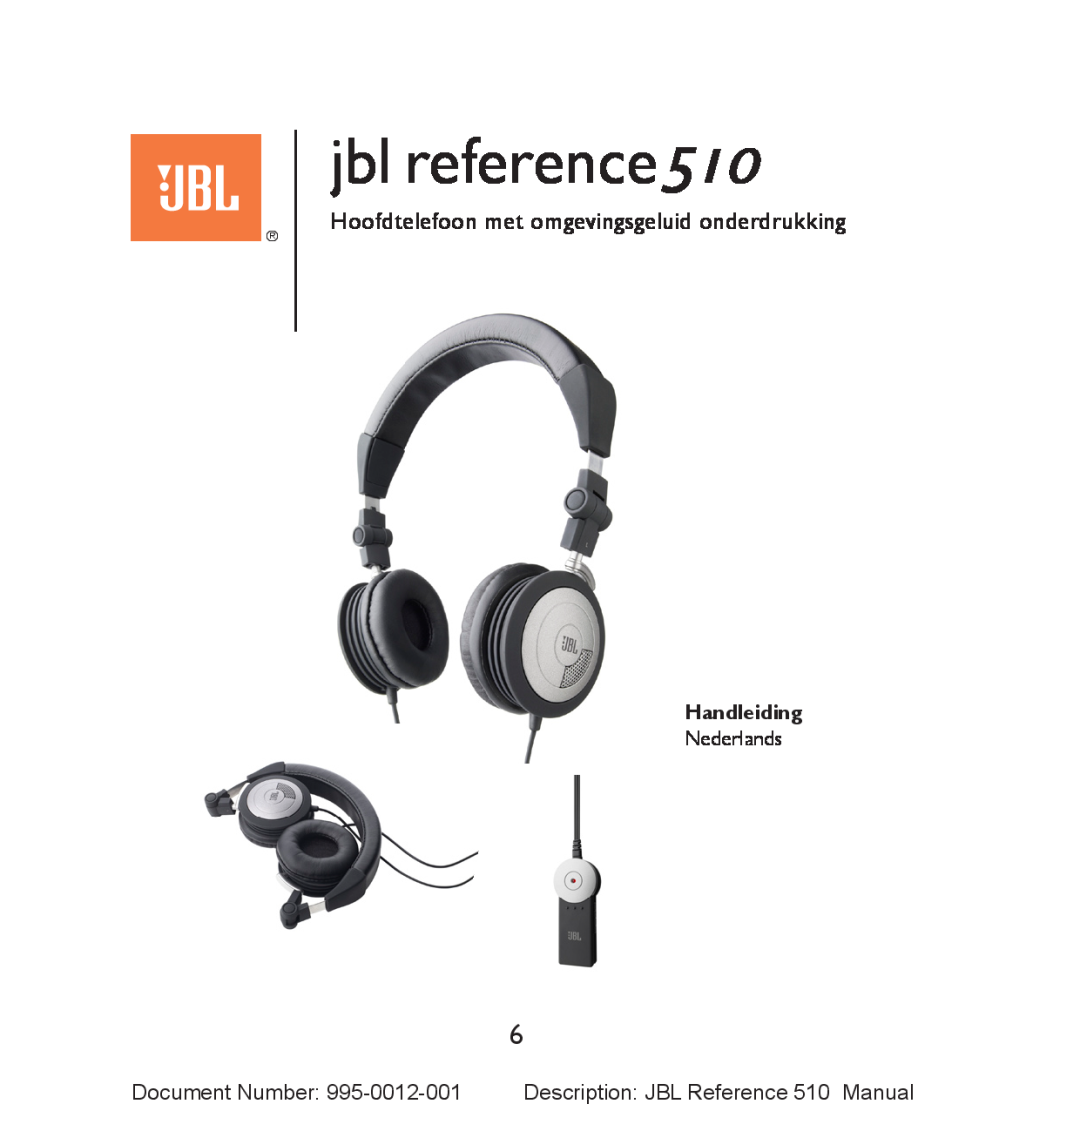 JBL manual Hoofdtelefoon met omgevingsgeluid onderdrukking, Handleiding, jbl reference510 